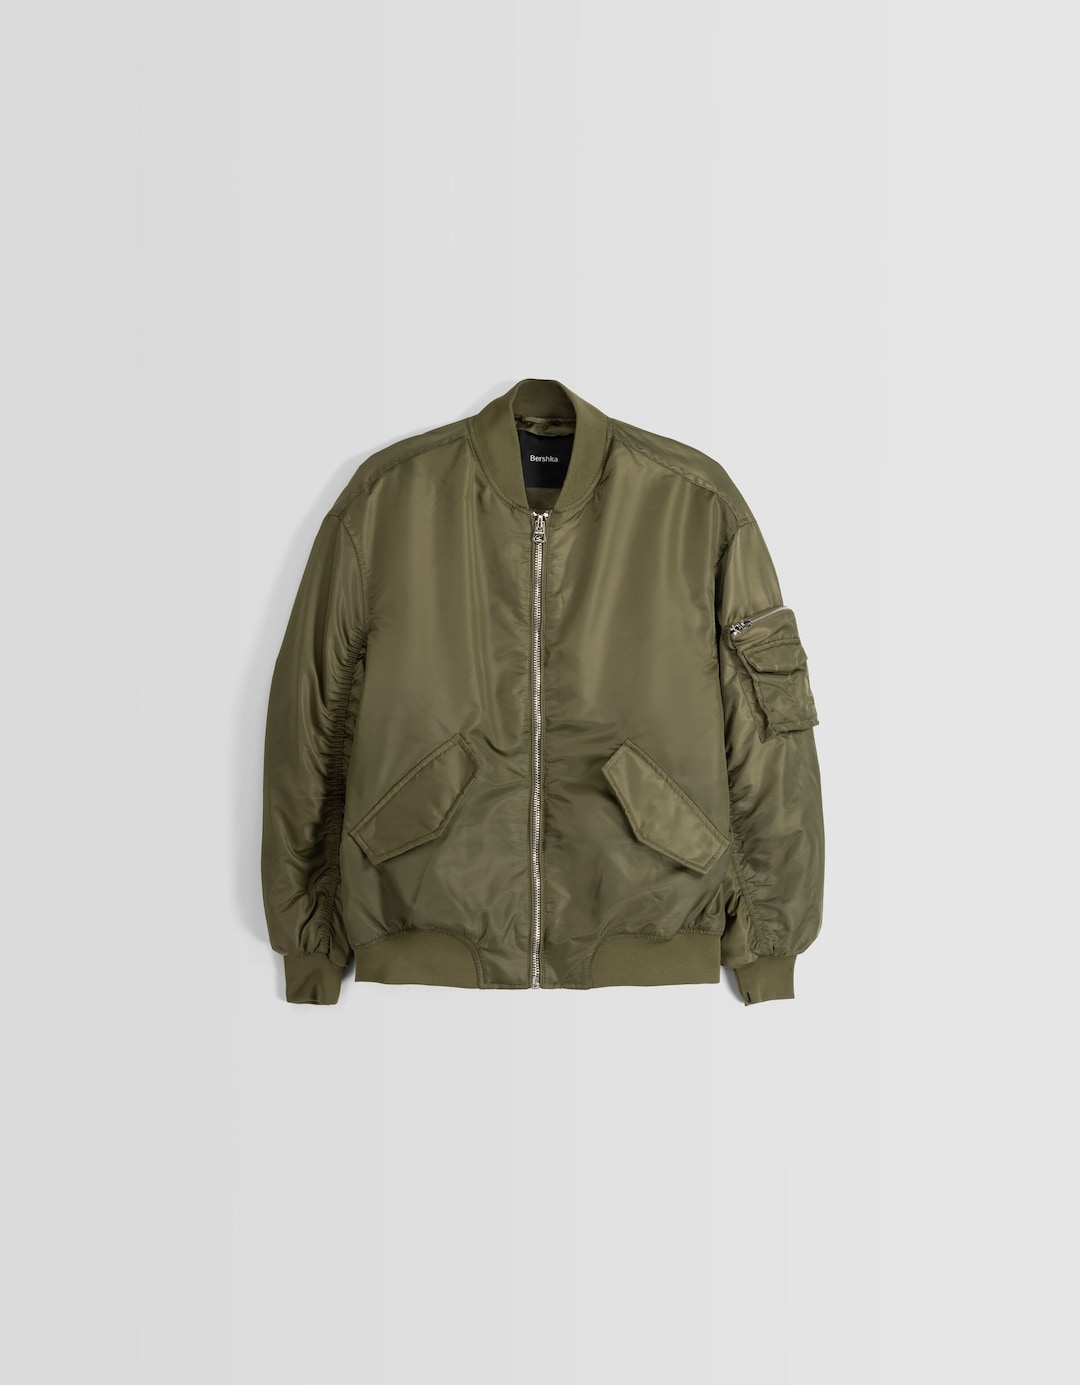 Nylon blend bomber-style puffer jacket